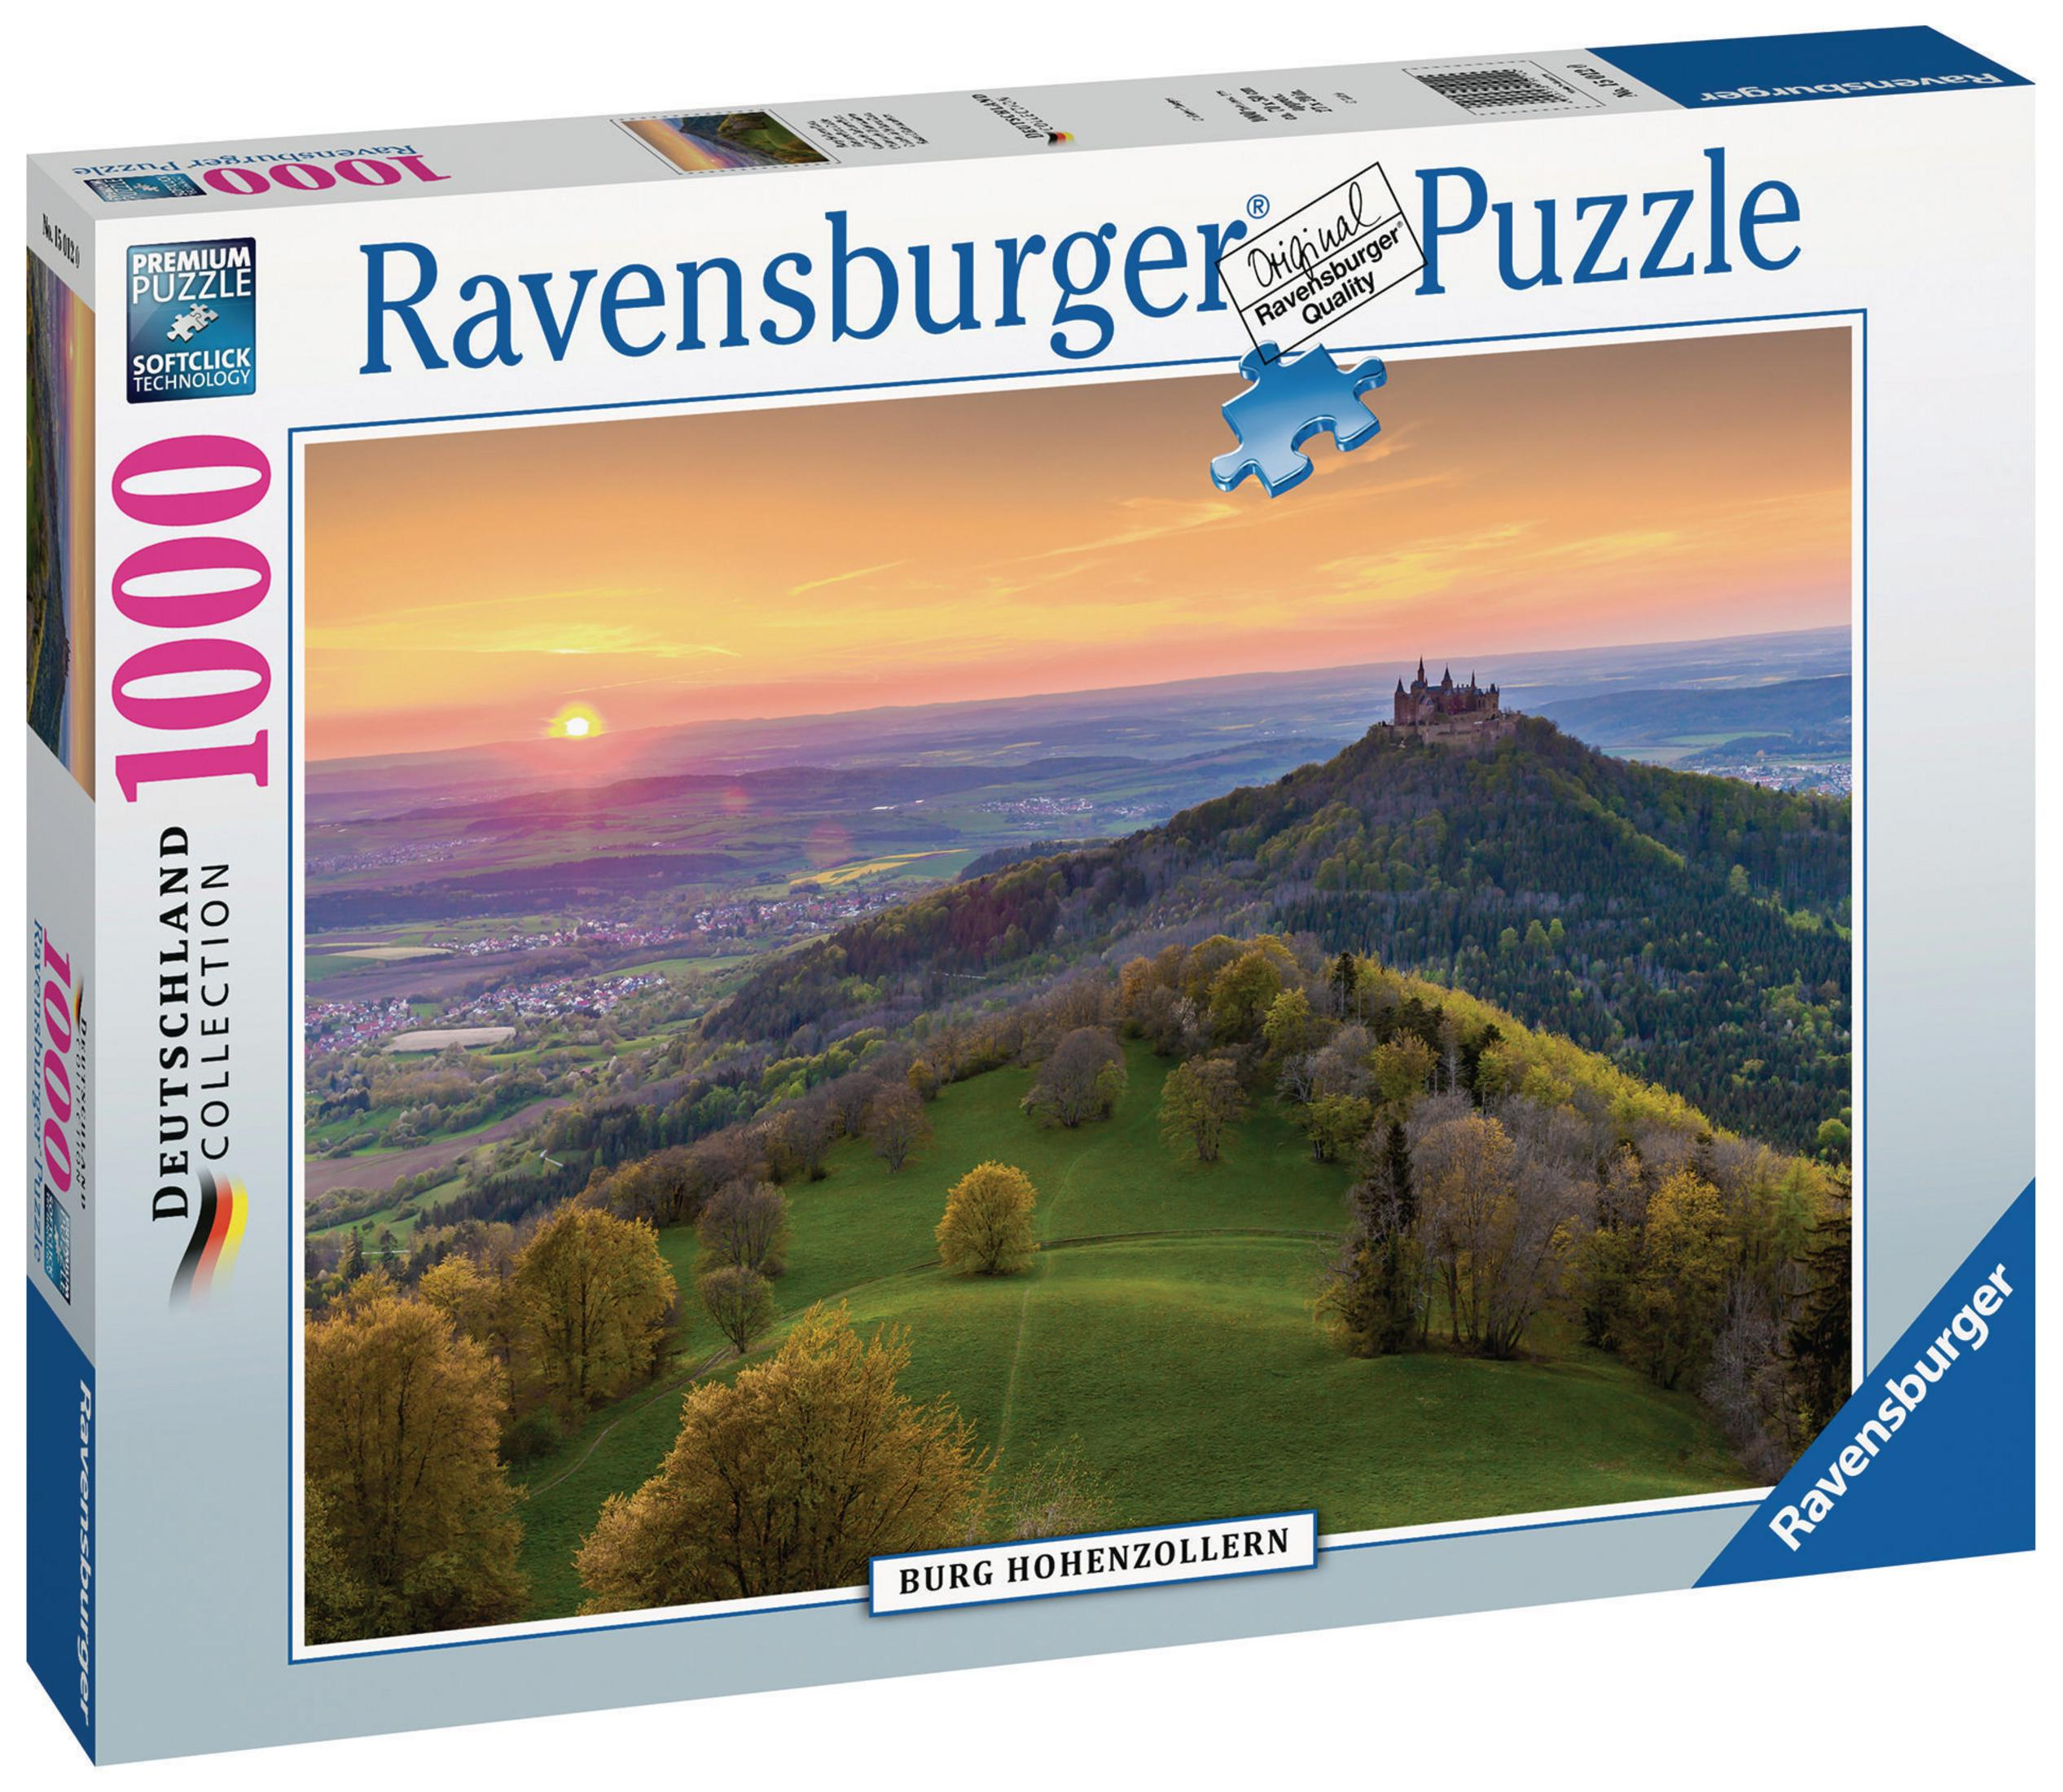 RAVENSBURGER HOHENZOLLERN 15012 BURG Puzzle